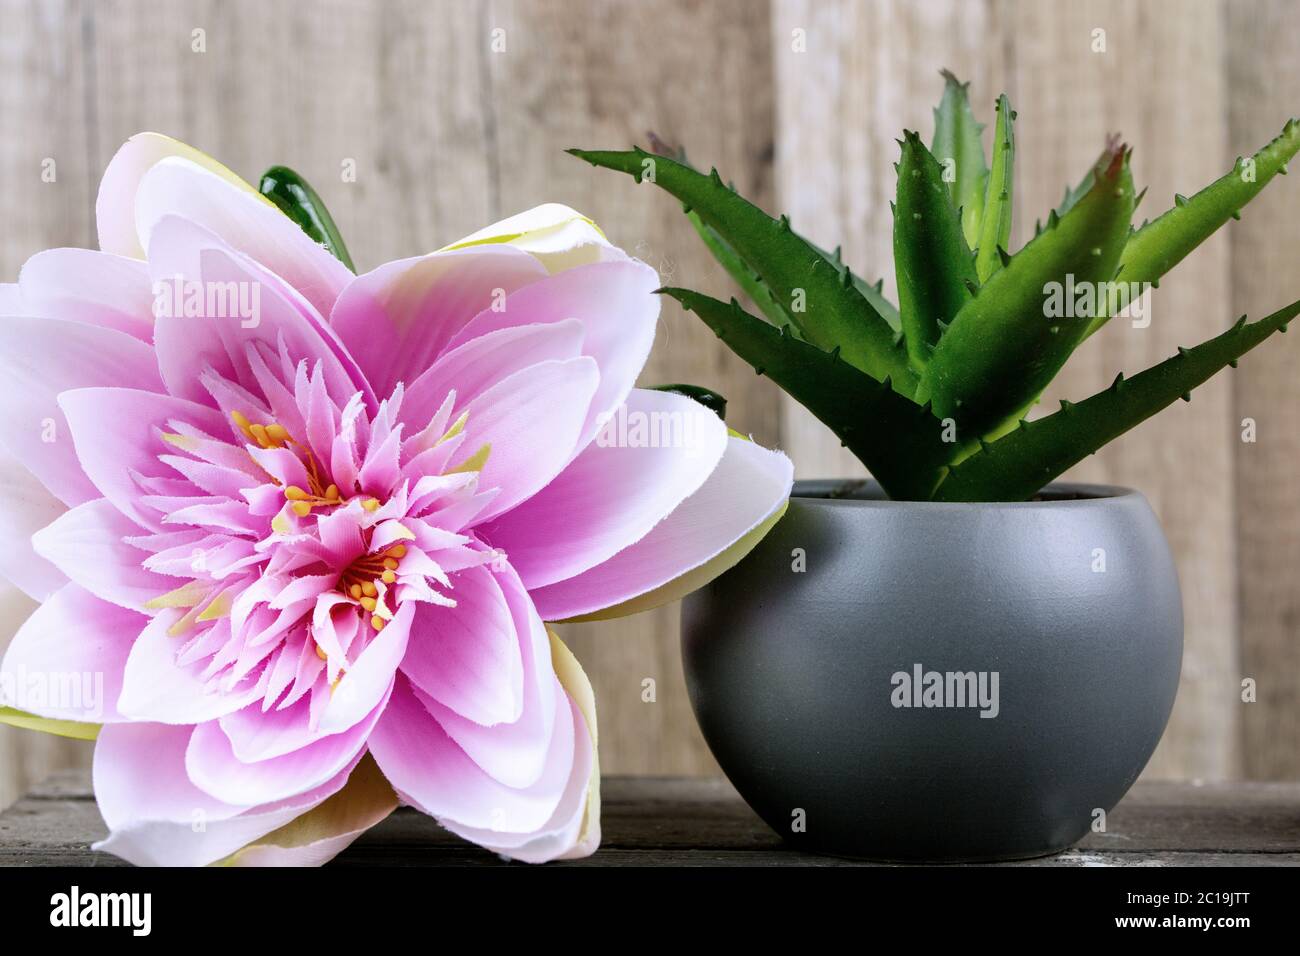 Plante et fleur rose tropicale avec bois en arrière-plan. Spa beauté concept santé et bien-être. Banque D'Images